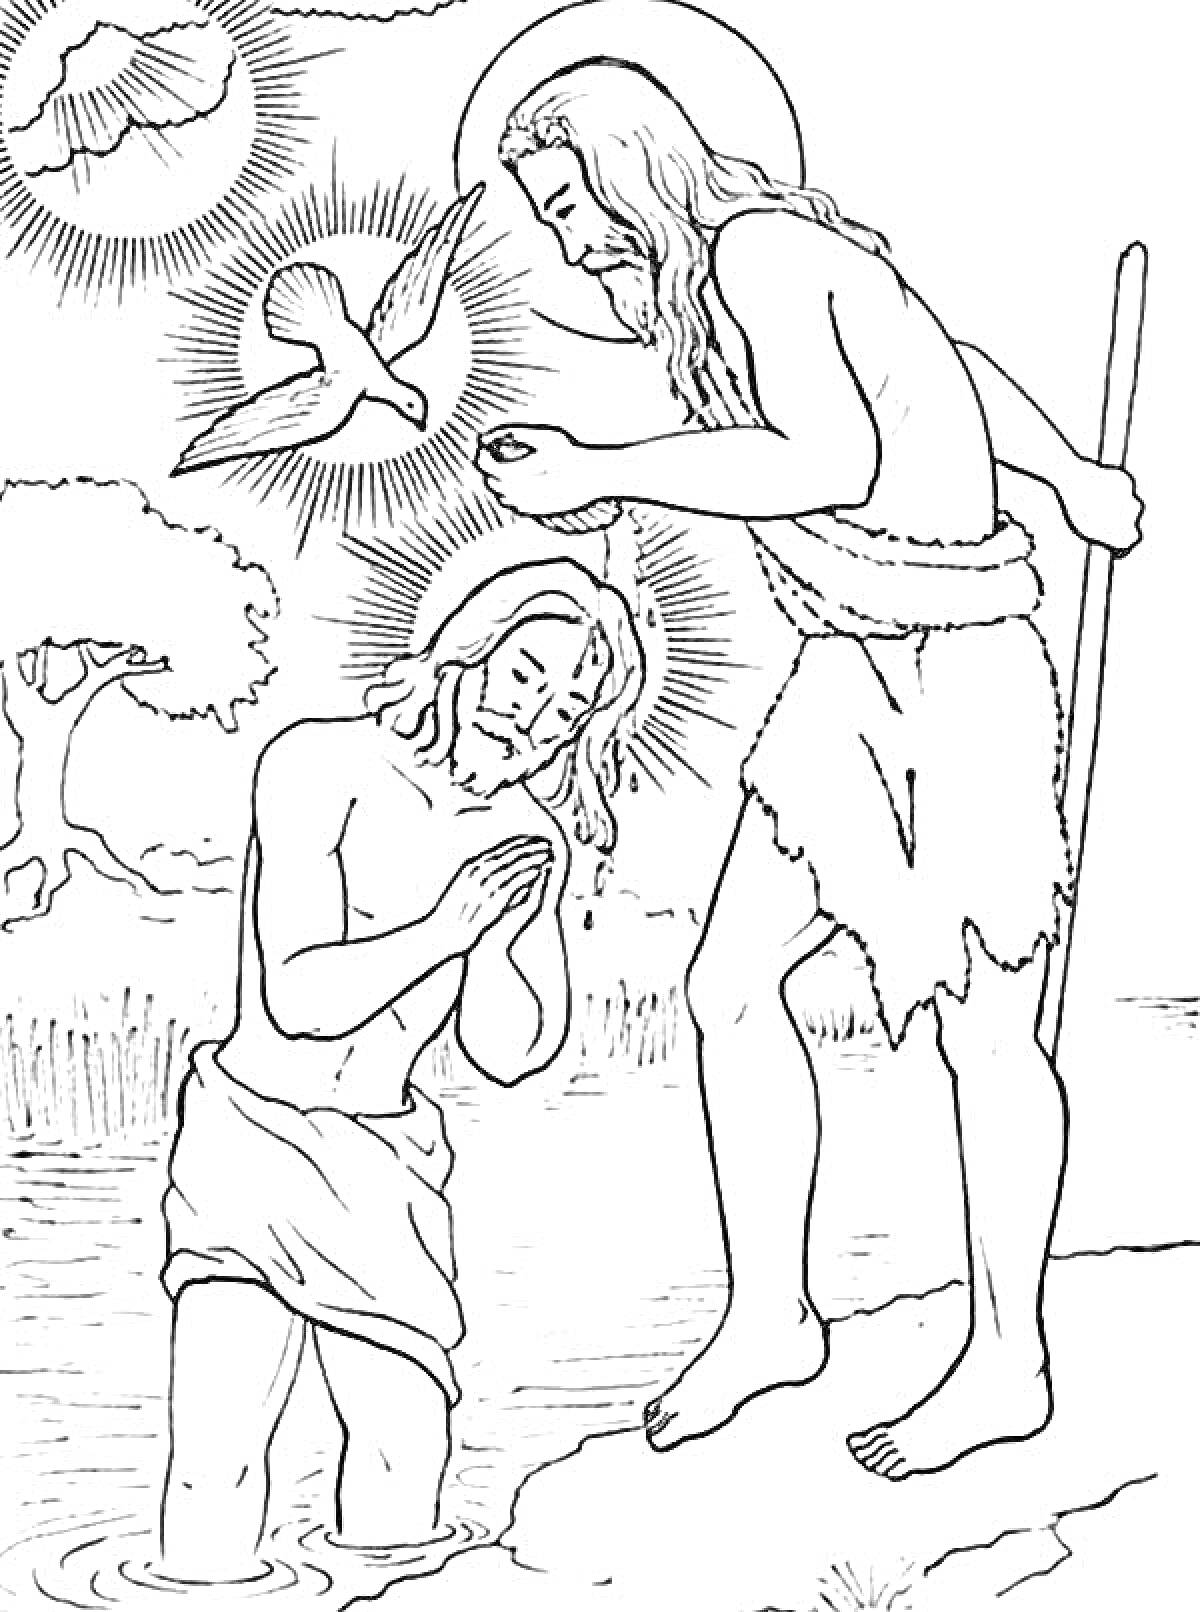 Раскраска Иисус Христос и Иоанн Креститель на Крещении Господнем у реки со святым духом в виде голубя